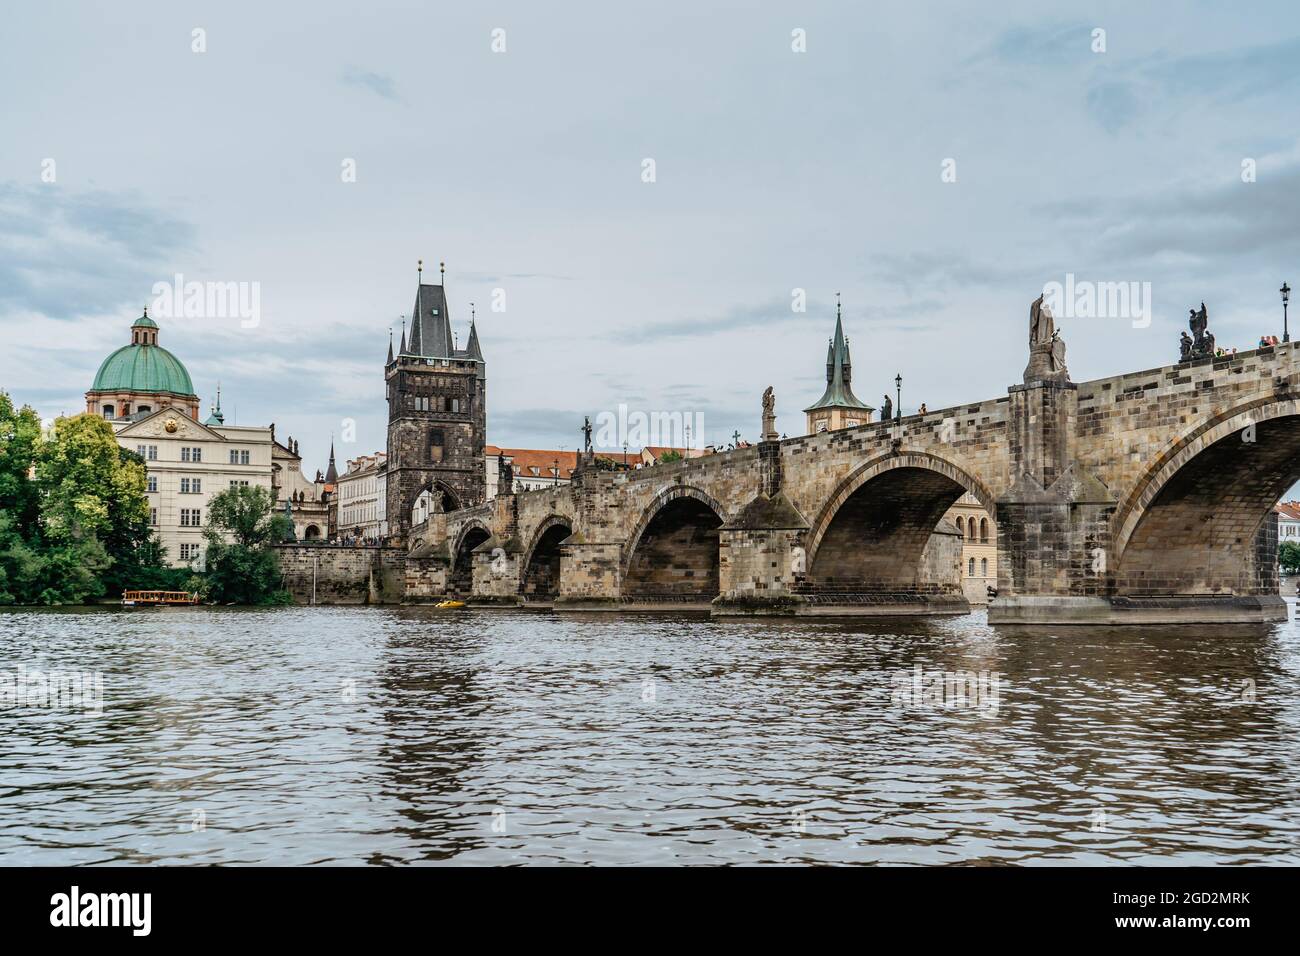 Pont Charles, bateau touristique sur la Vltava, Prague, République Tchèque. Bâtiments et monuments de la vieille ville la journée d'été. Un paysage urbain européen incroyable Banque D'Images